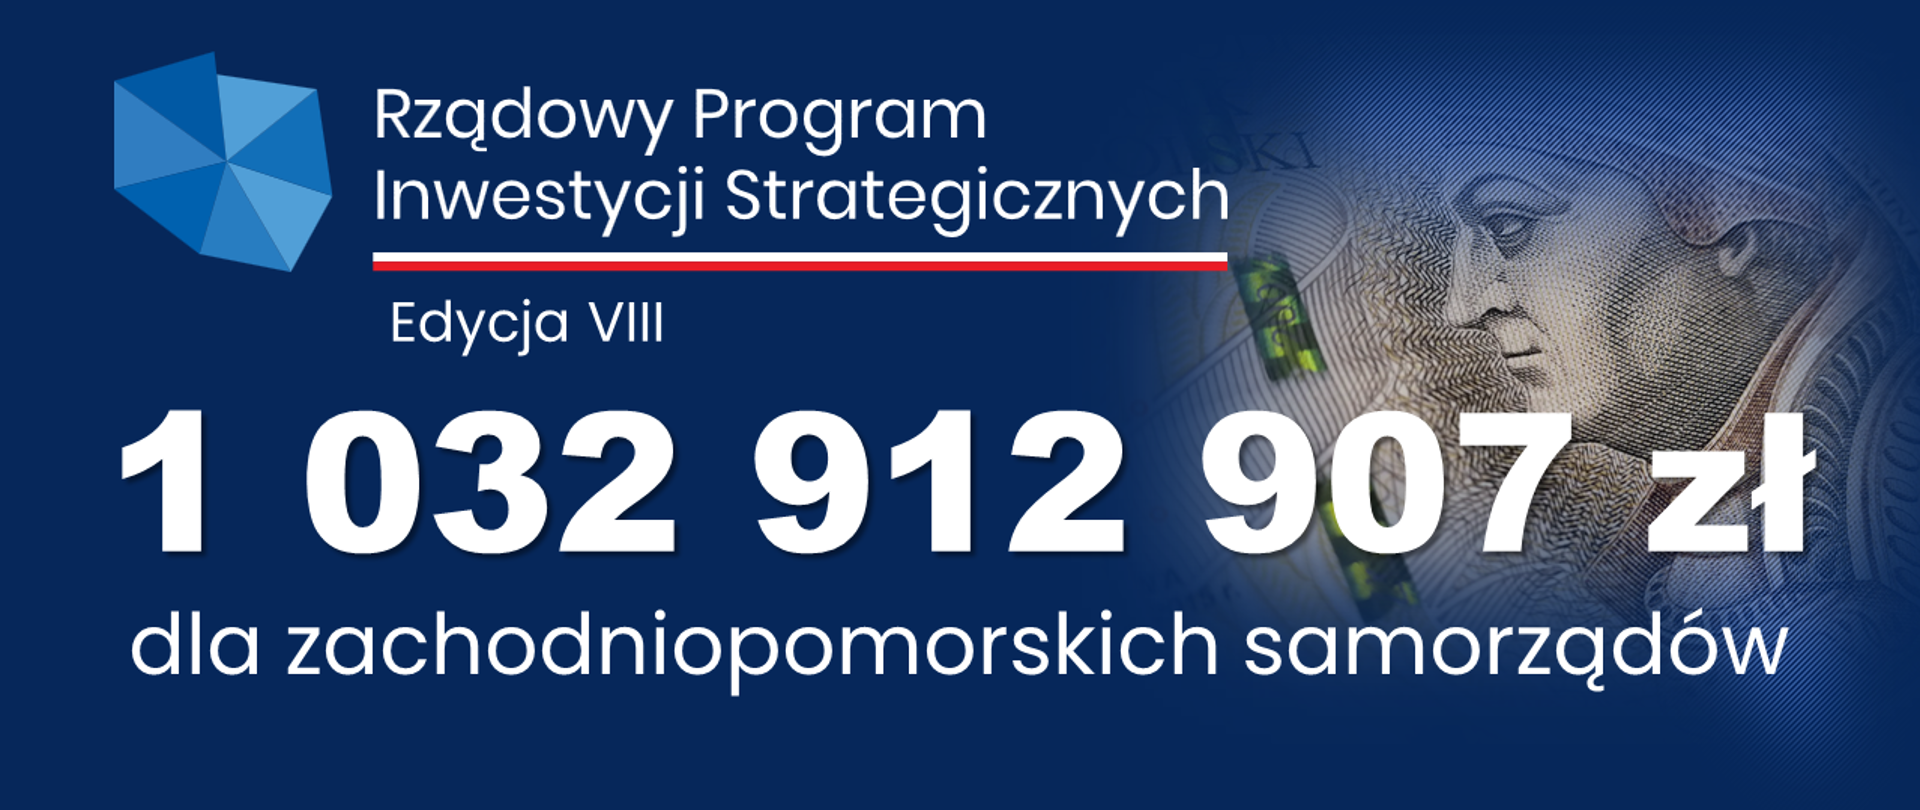 ponad miliard złotych z Rządowego Programu Inwestycji Strategicznych - edycja VIII